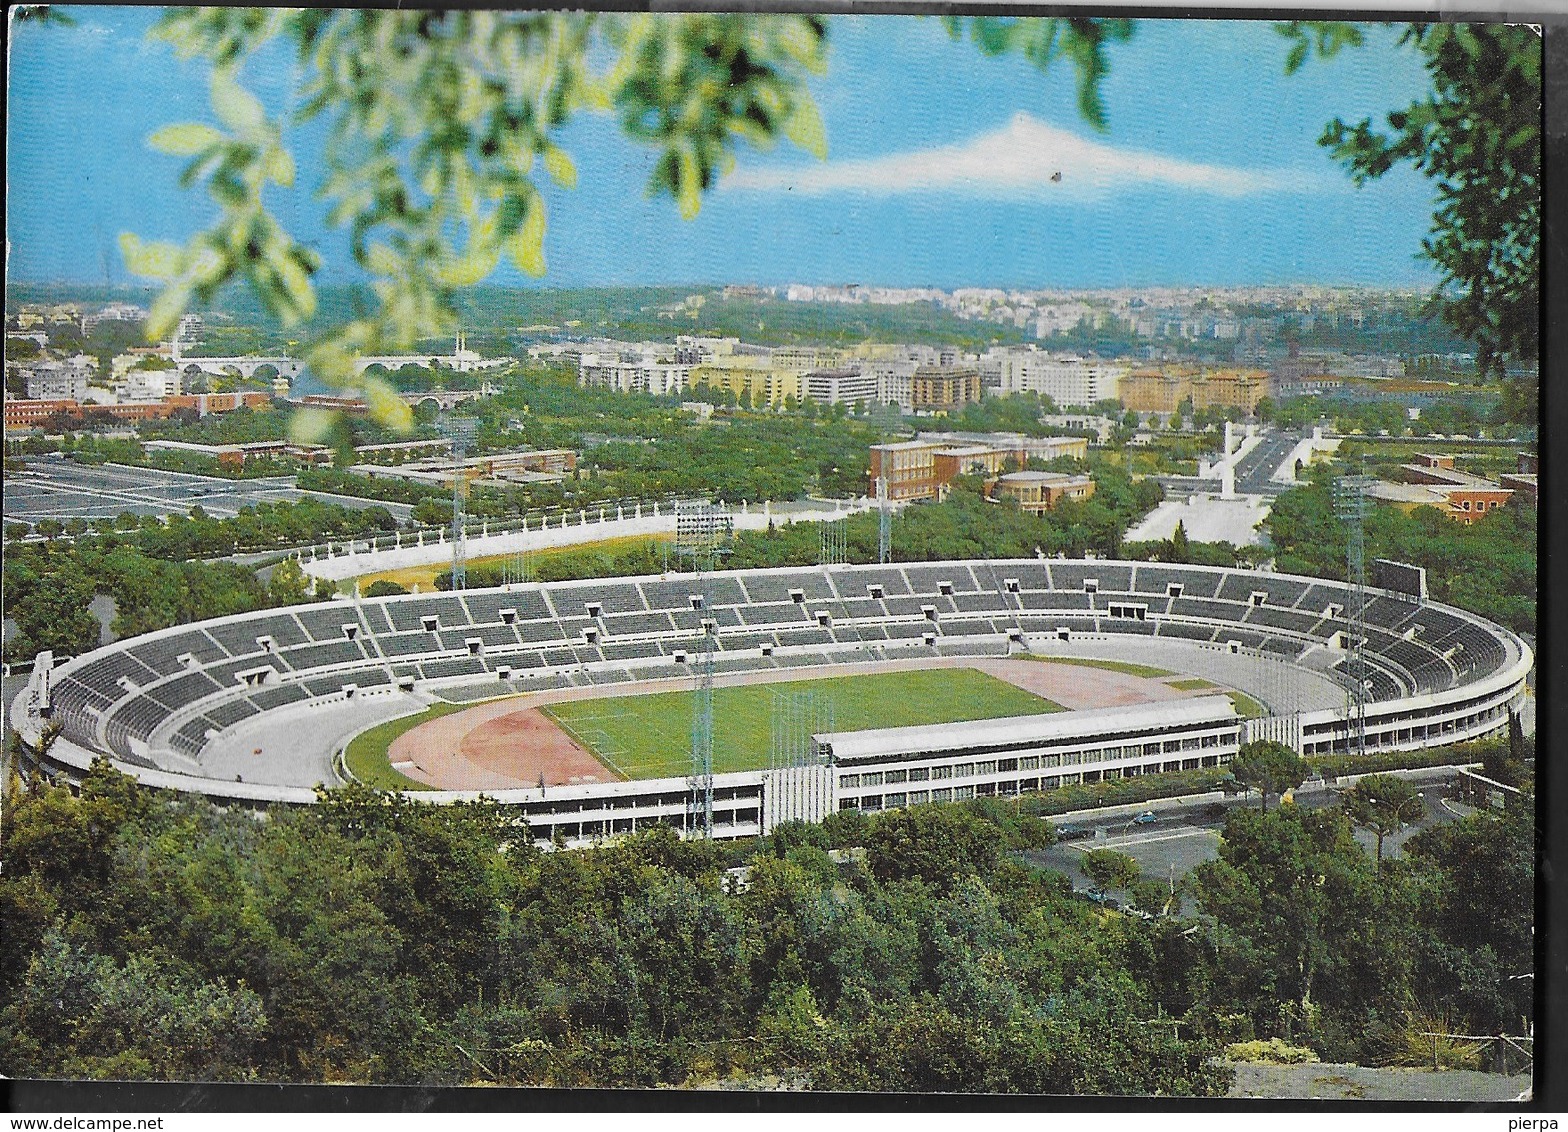 ROMA - STADIO OLIMPICO - VIAGGIATA 1975 FRANCOBOLLO ASPORTATO - Stadions